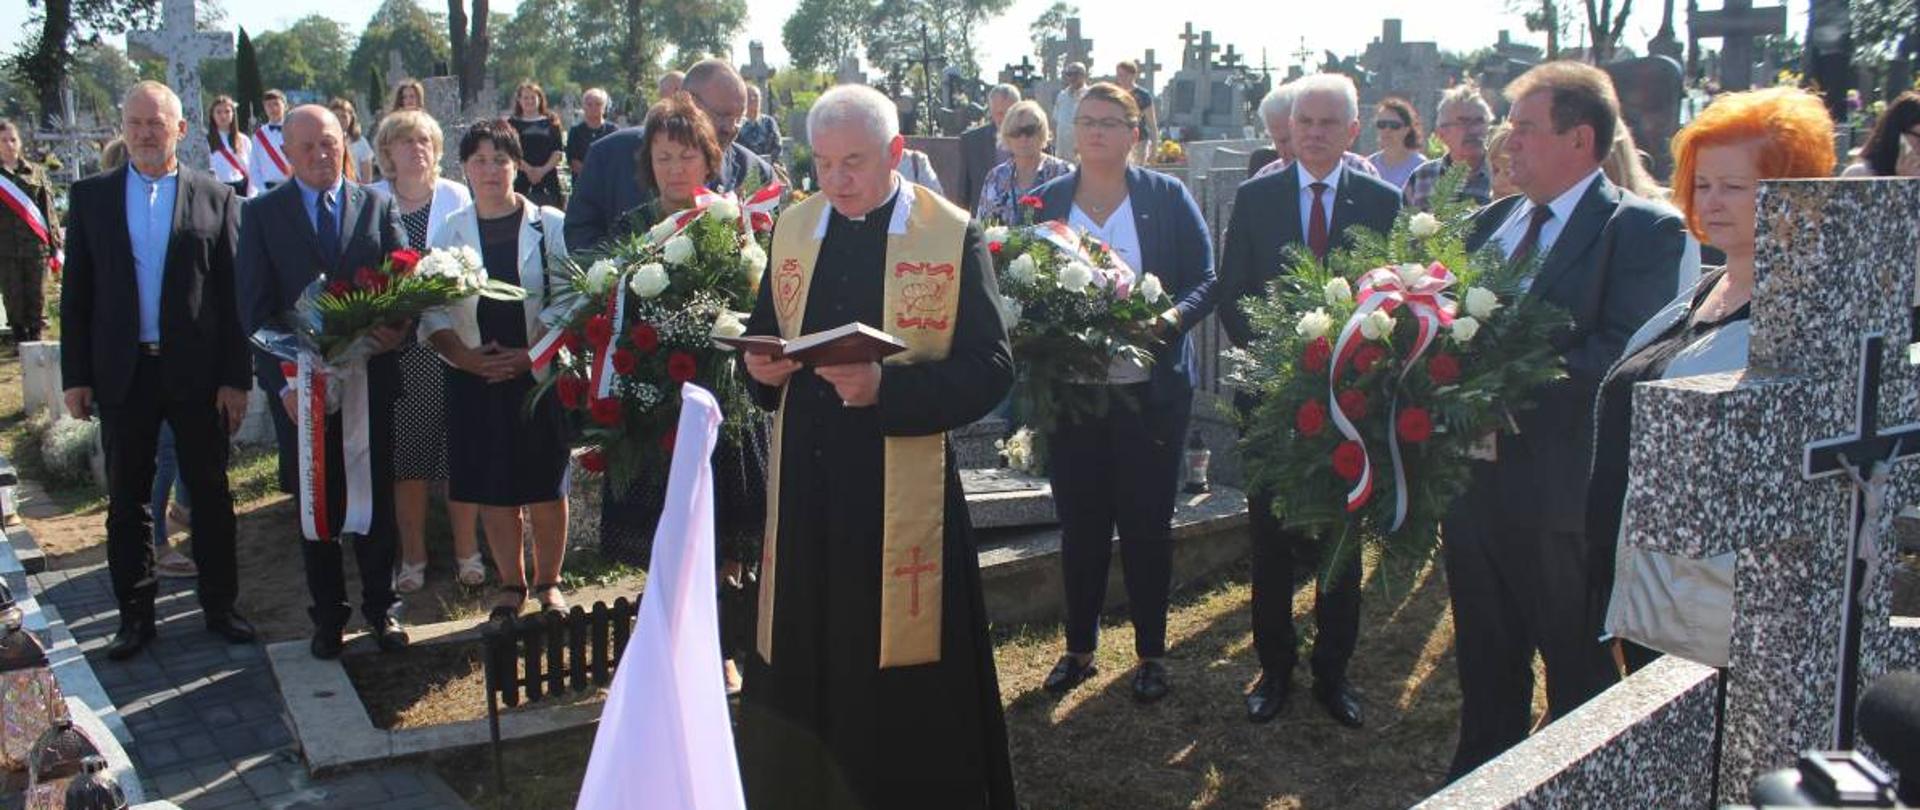 Na zdjęciu ksiądz, który poświęca nowy pomnik na cmentarzu w Kosowie Lackim weterana Feliksa Bartczuka, w towarzystwie delegacji samorządowych.